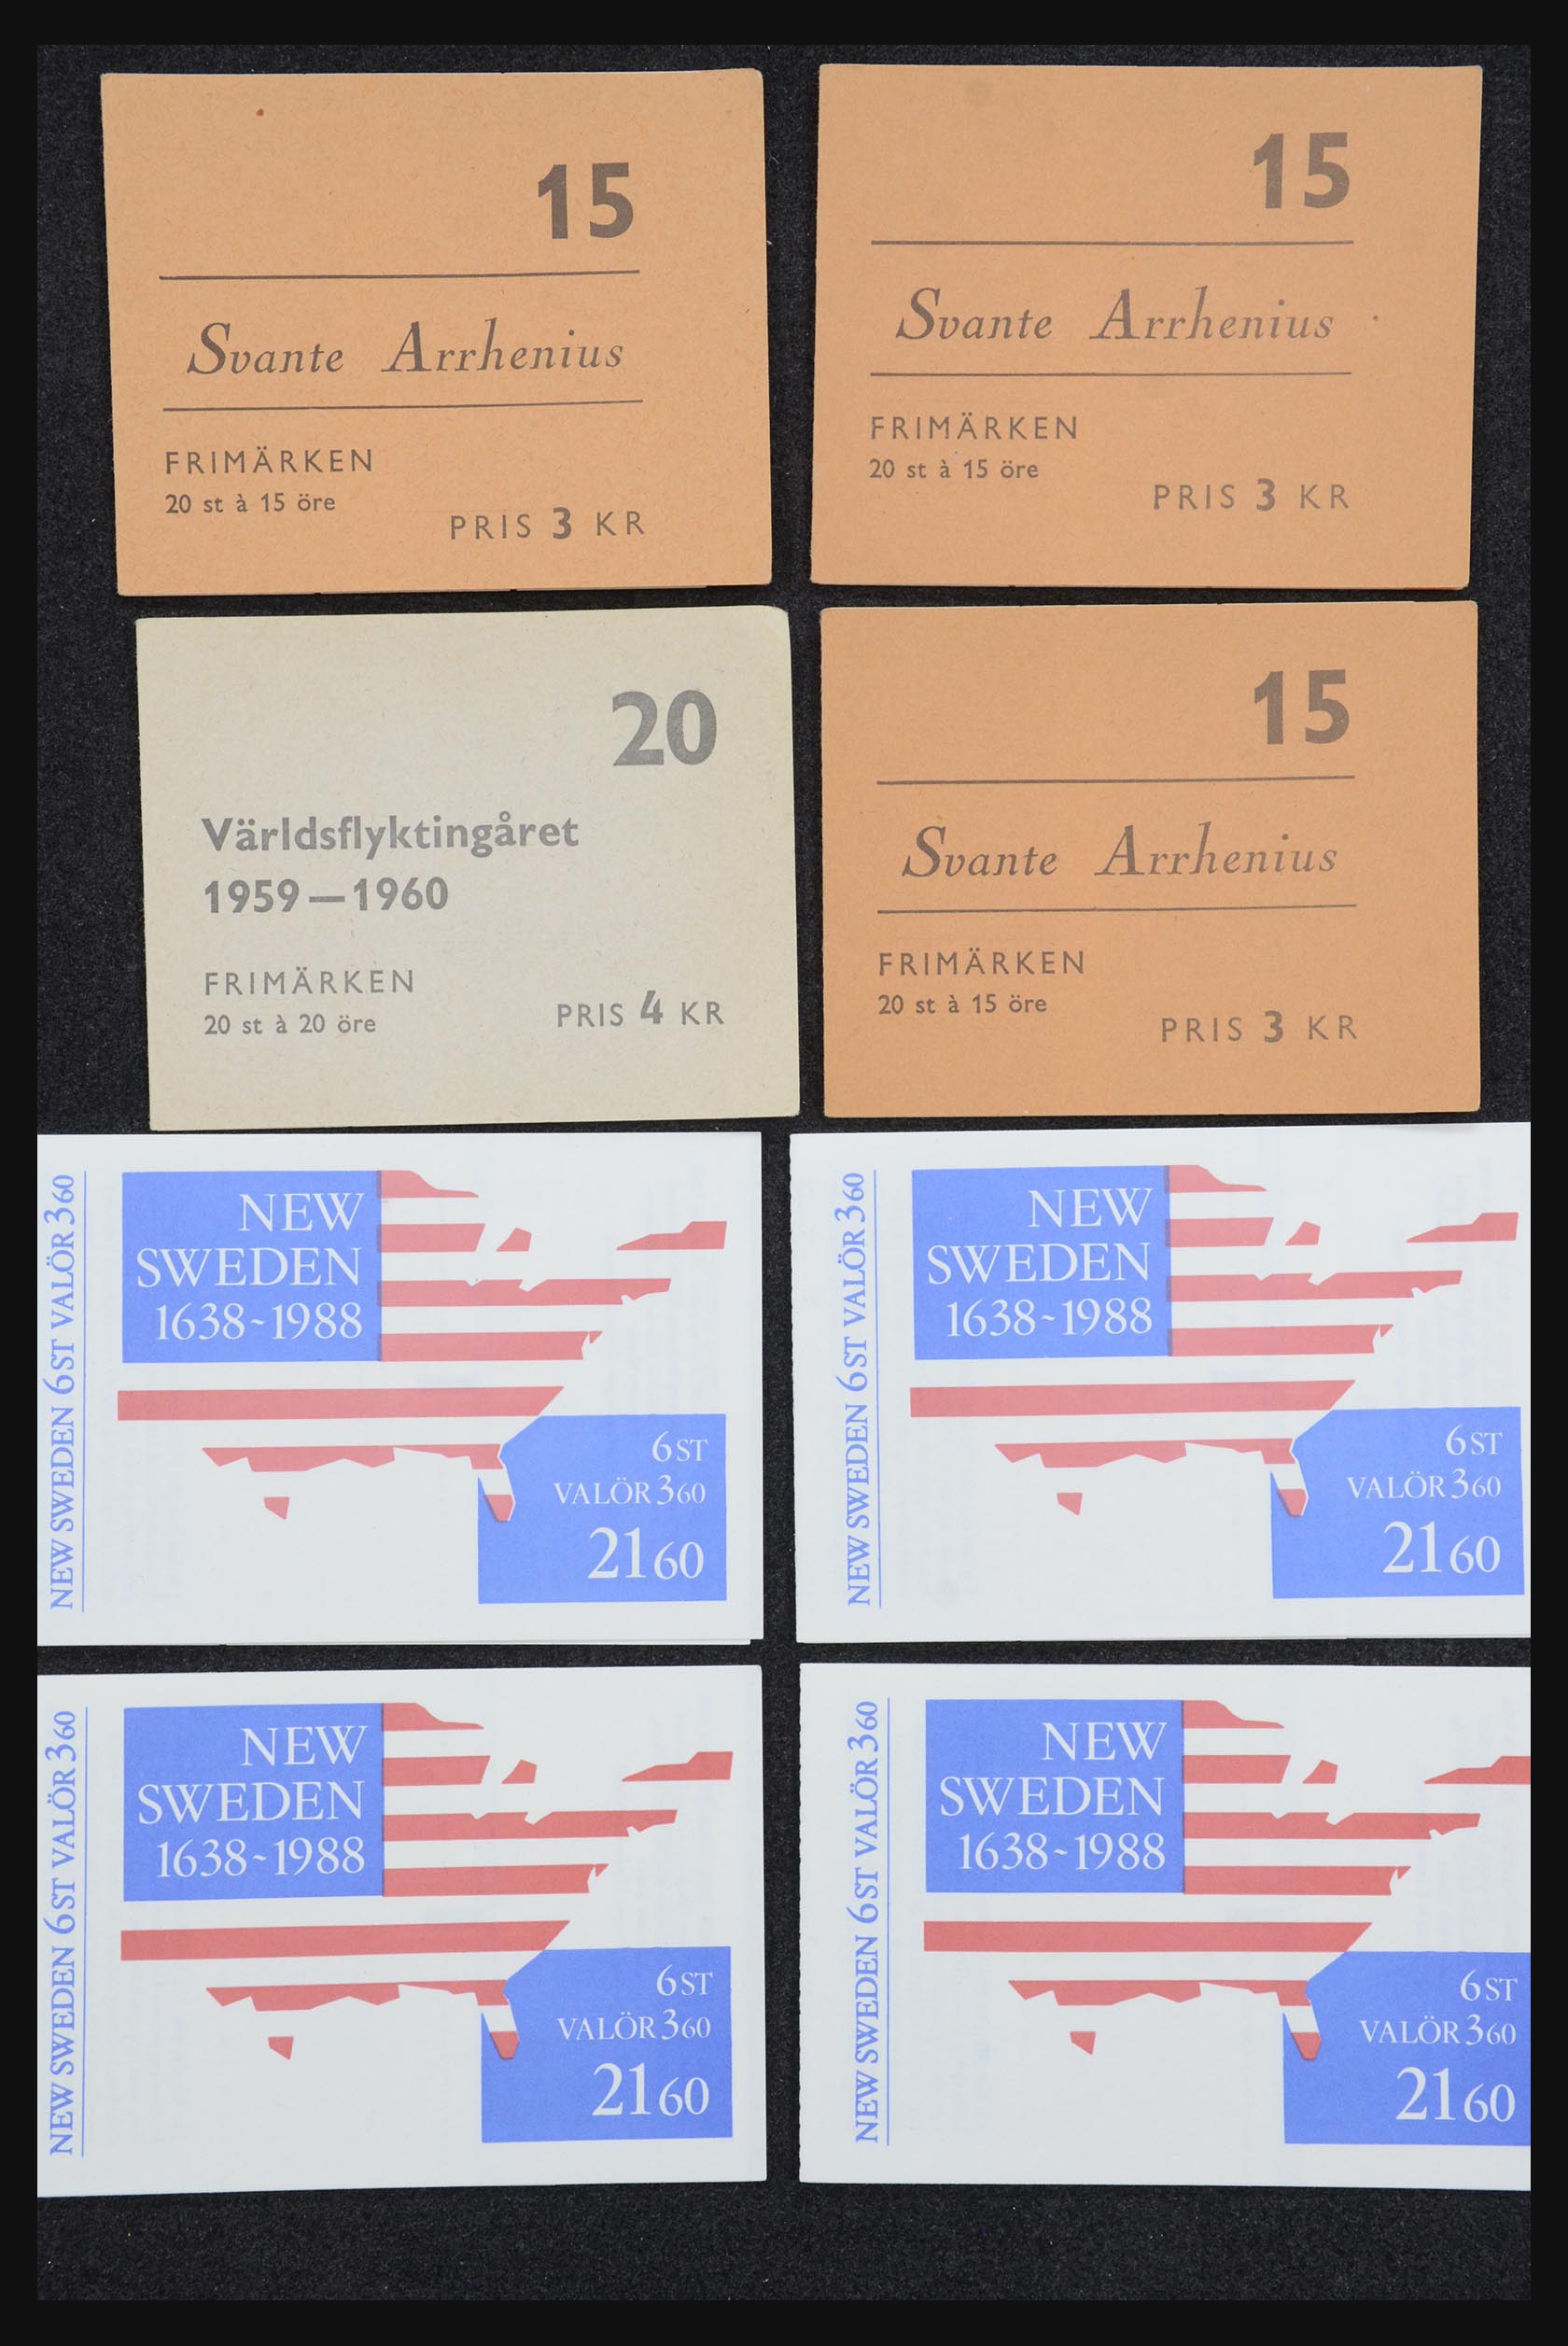 32026 045 - 32026 Sweden stampbooklets 1949-1990.